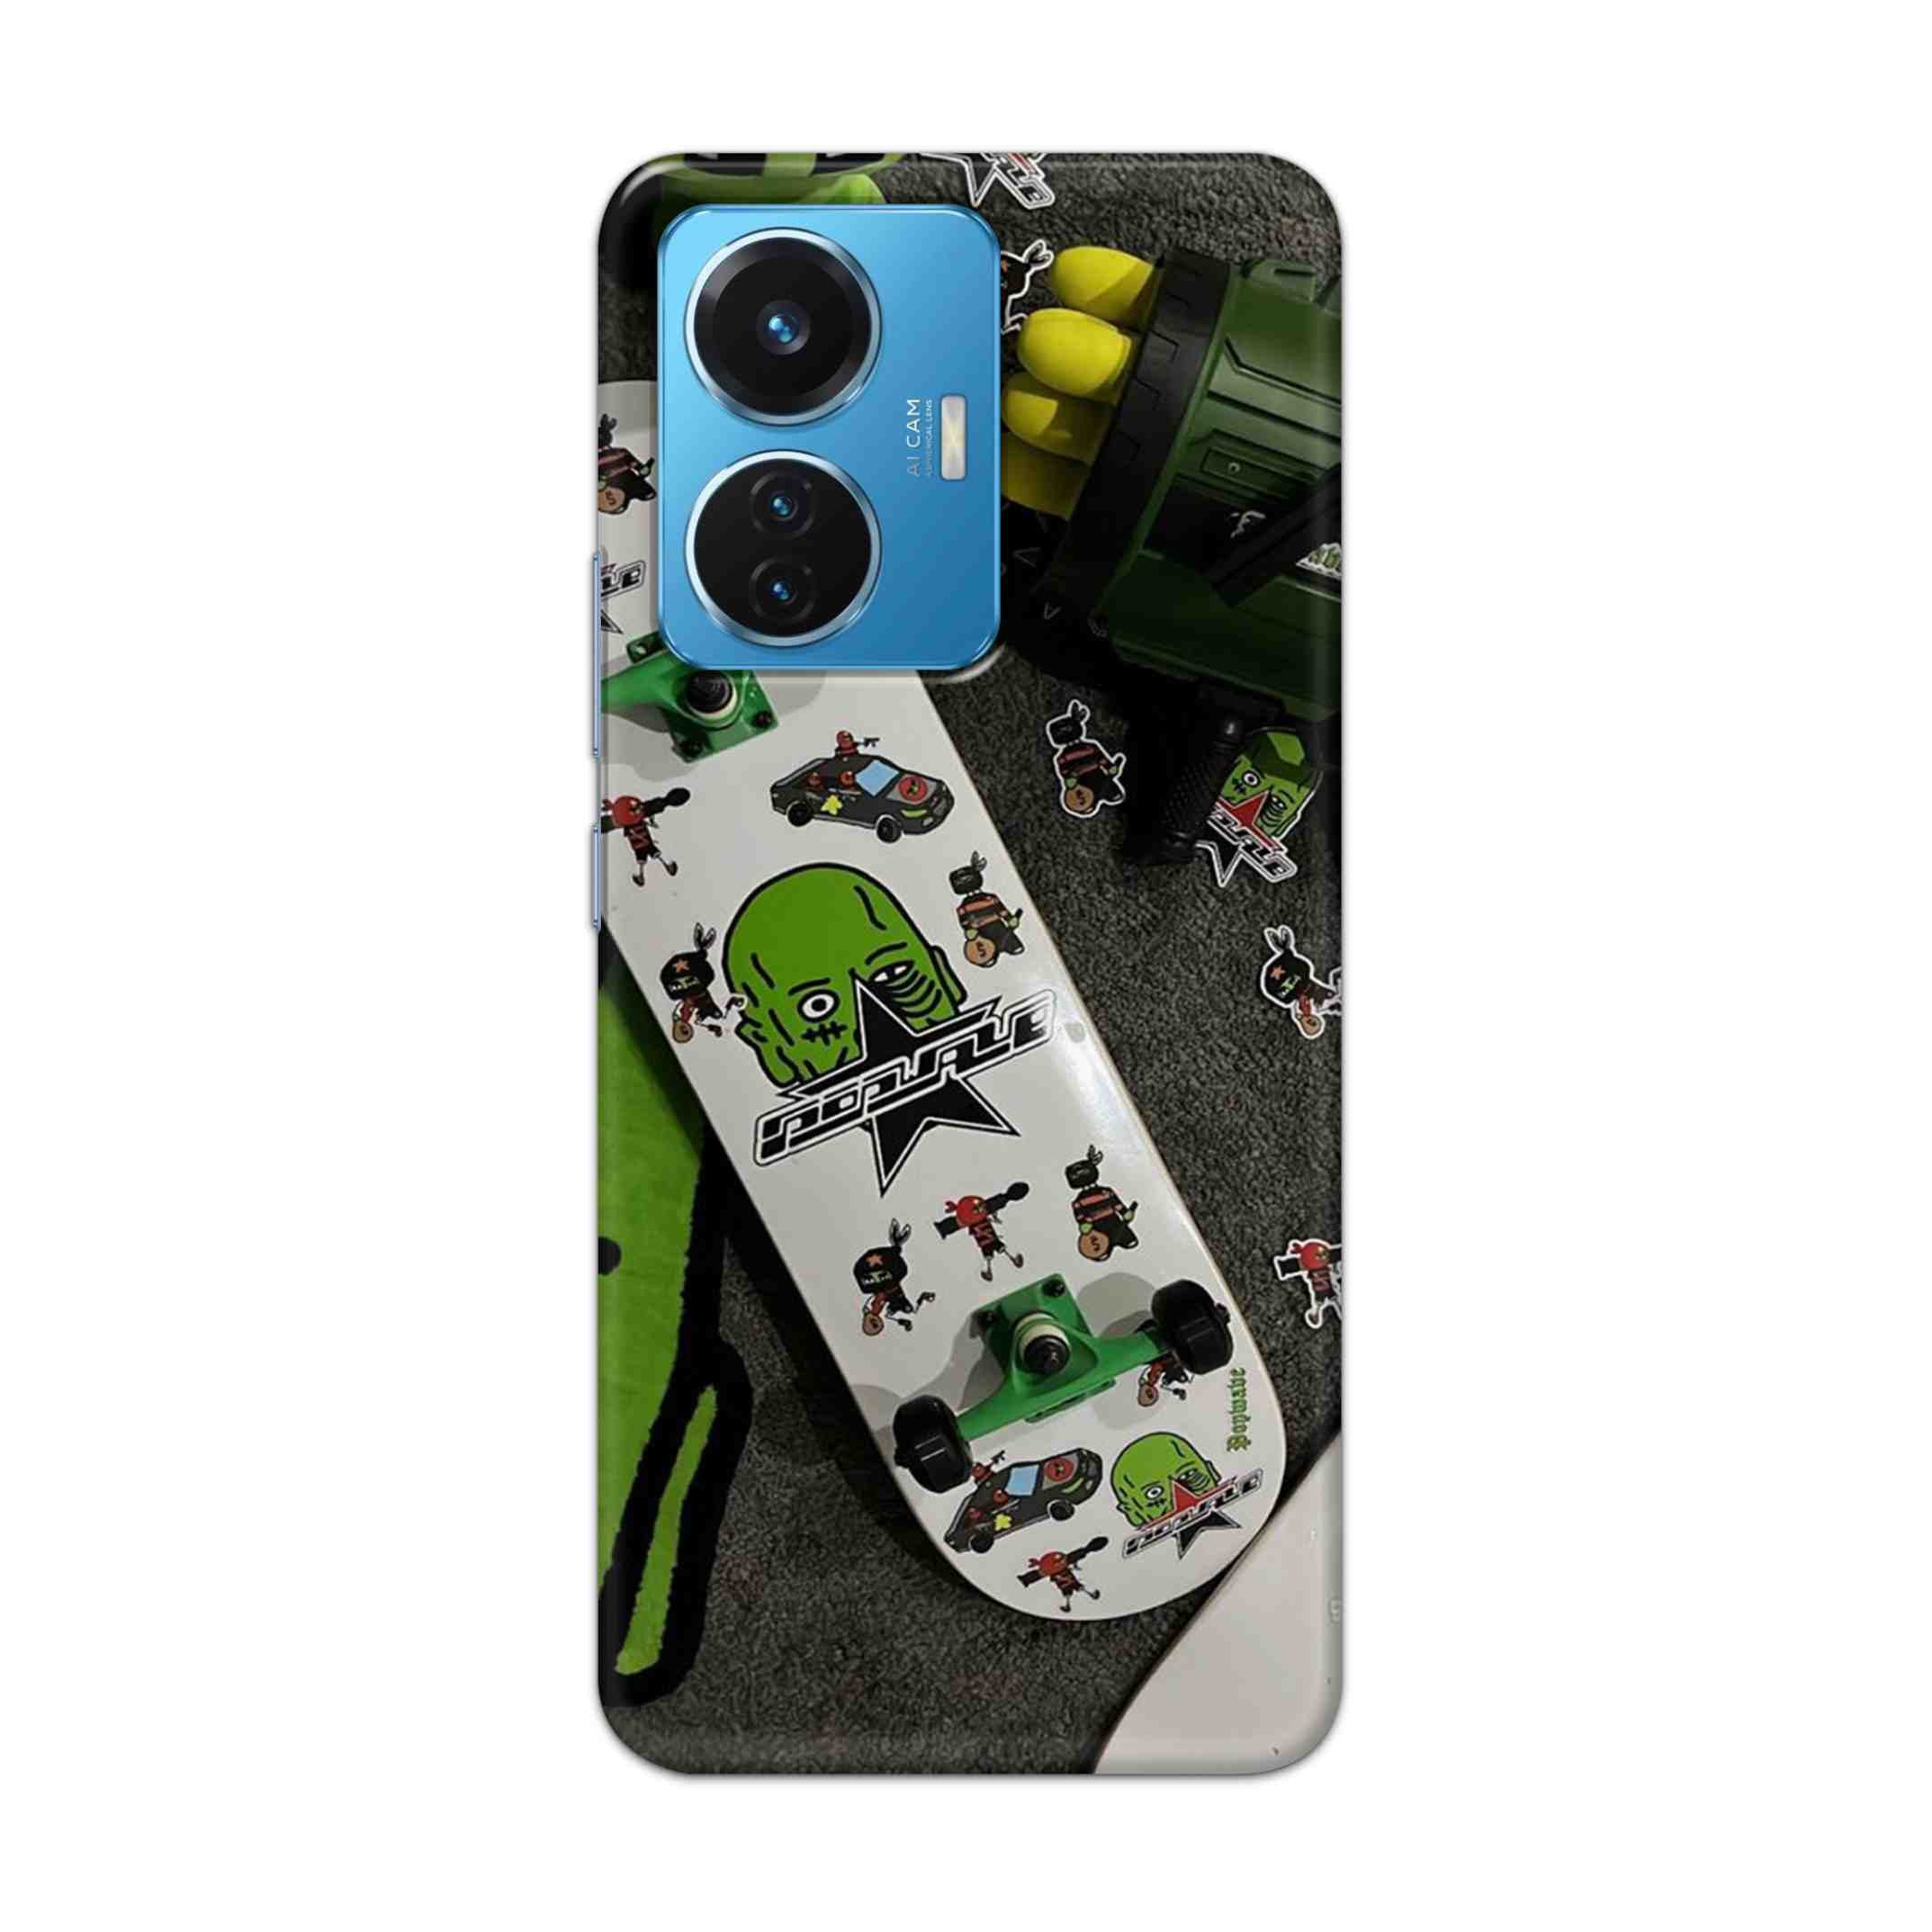 Buy Hulk Skateboard Hard Back Mobile Phone Case Cover For Vivo T1 44W Online